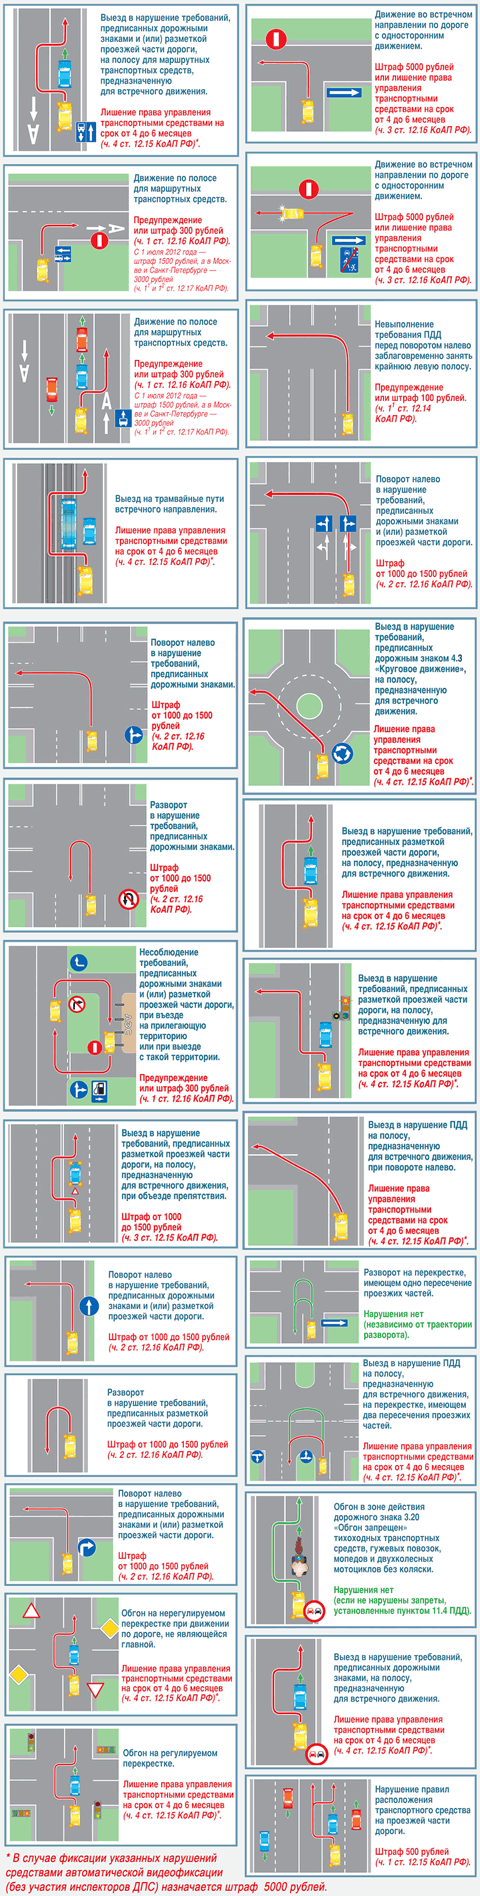 Плакат-схемы с нарушениями правил дорожного движения РФ с разъяснениями спорных ситуаций возникающих в процессе дорожного движения.